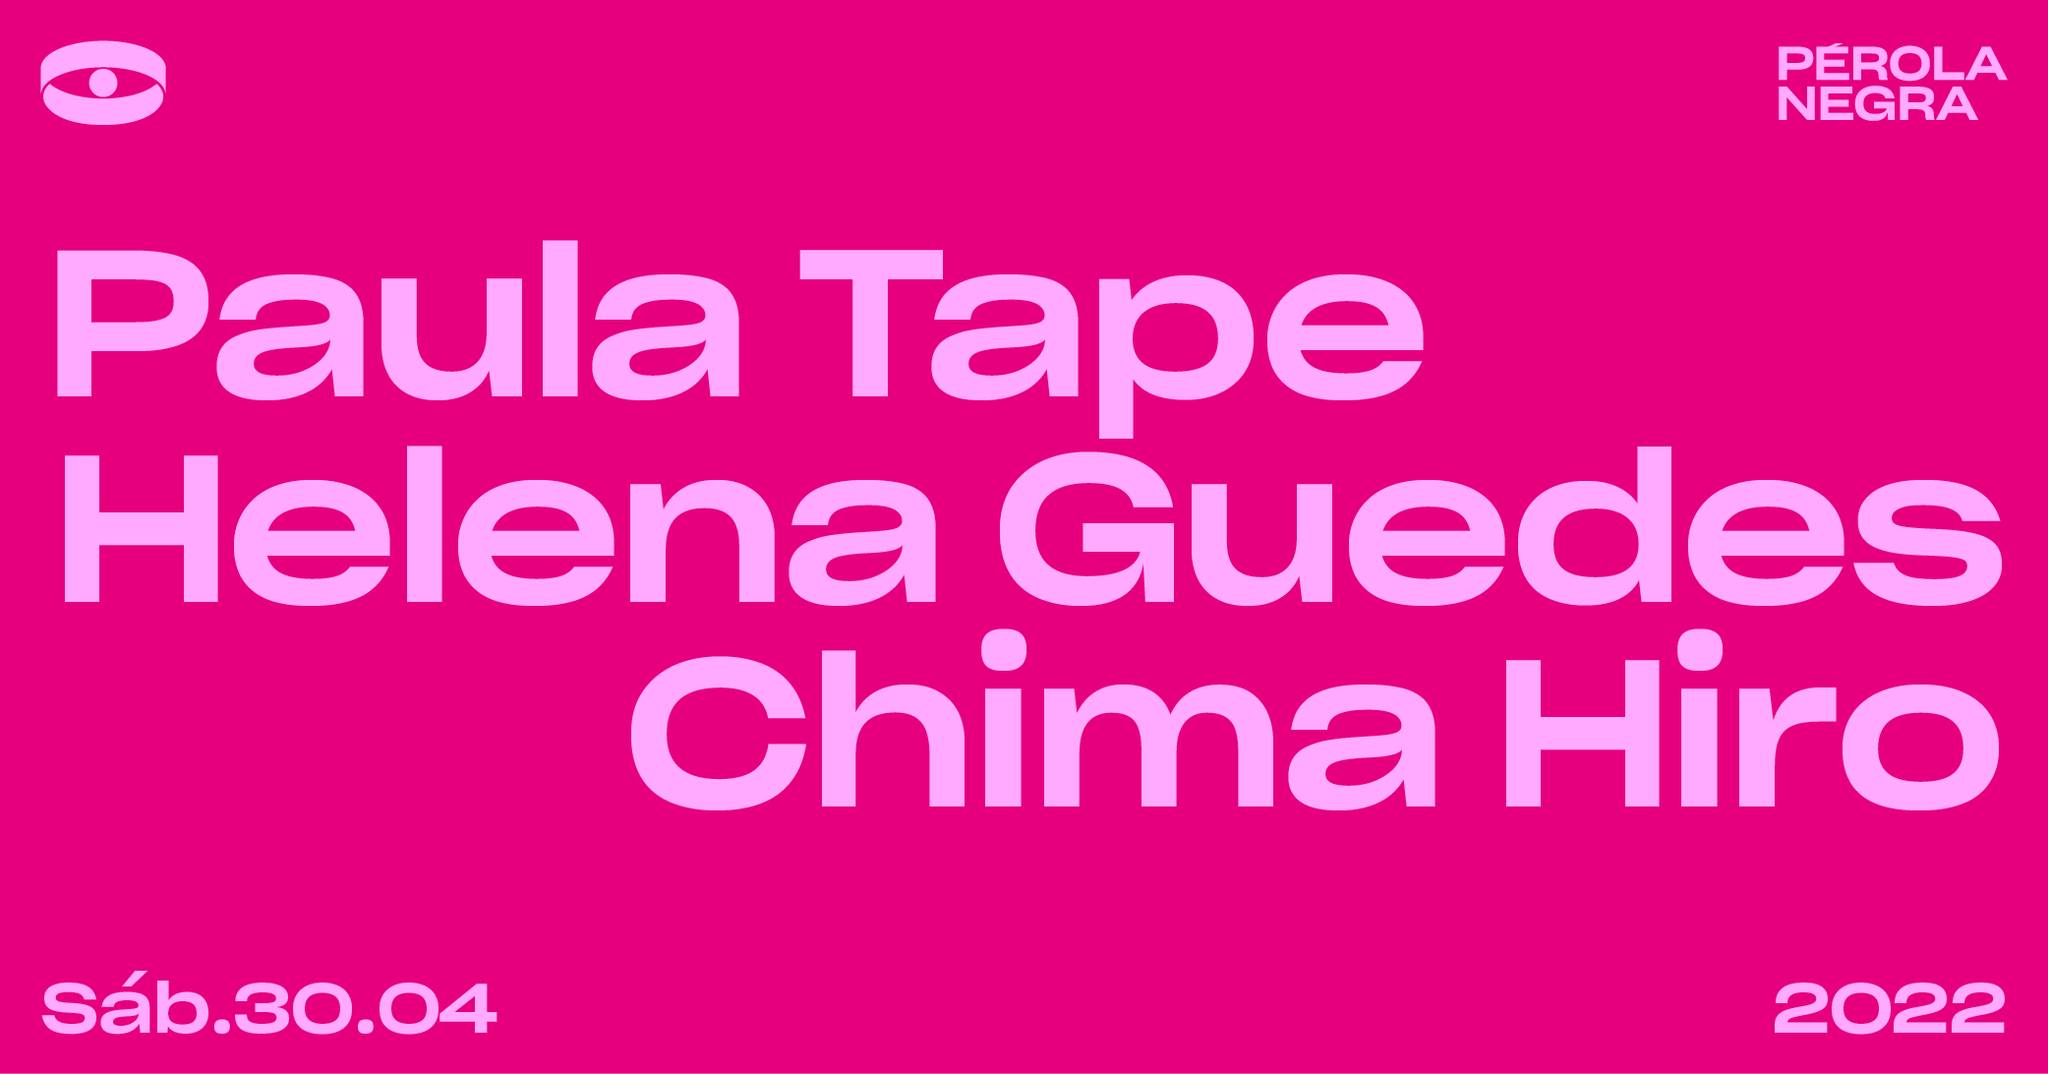 Paula Tape Helena Guedes Chima Hiro - Pérola Negra Club